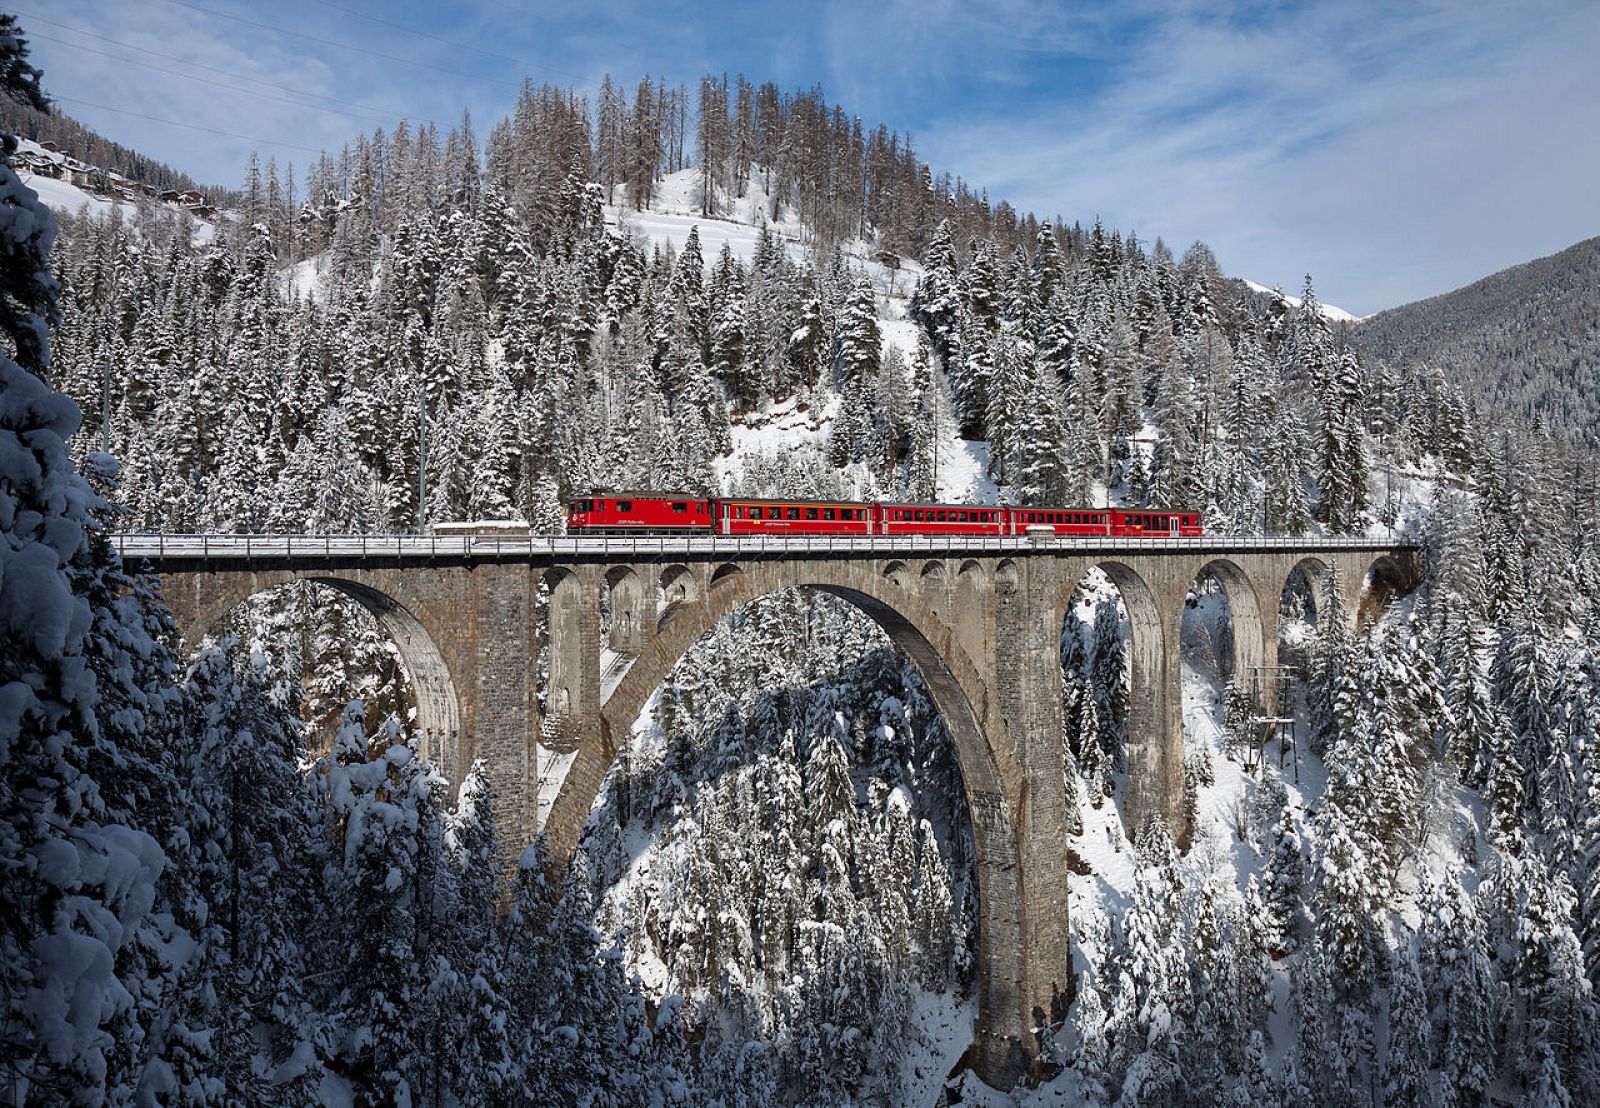 Fotografía ganadora a nivel internacional en la edición de 2013 de Wiki Loves Monuments. Viaducto de Wiesen, Suiza.